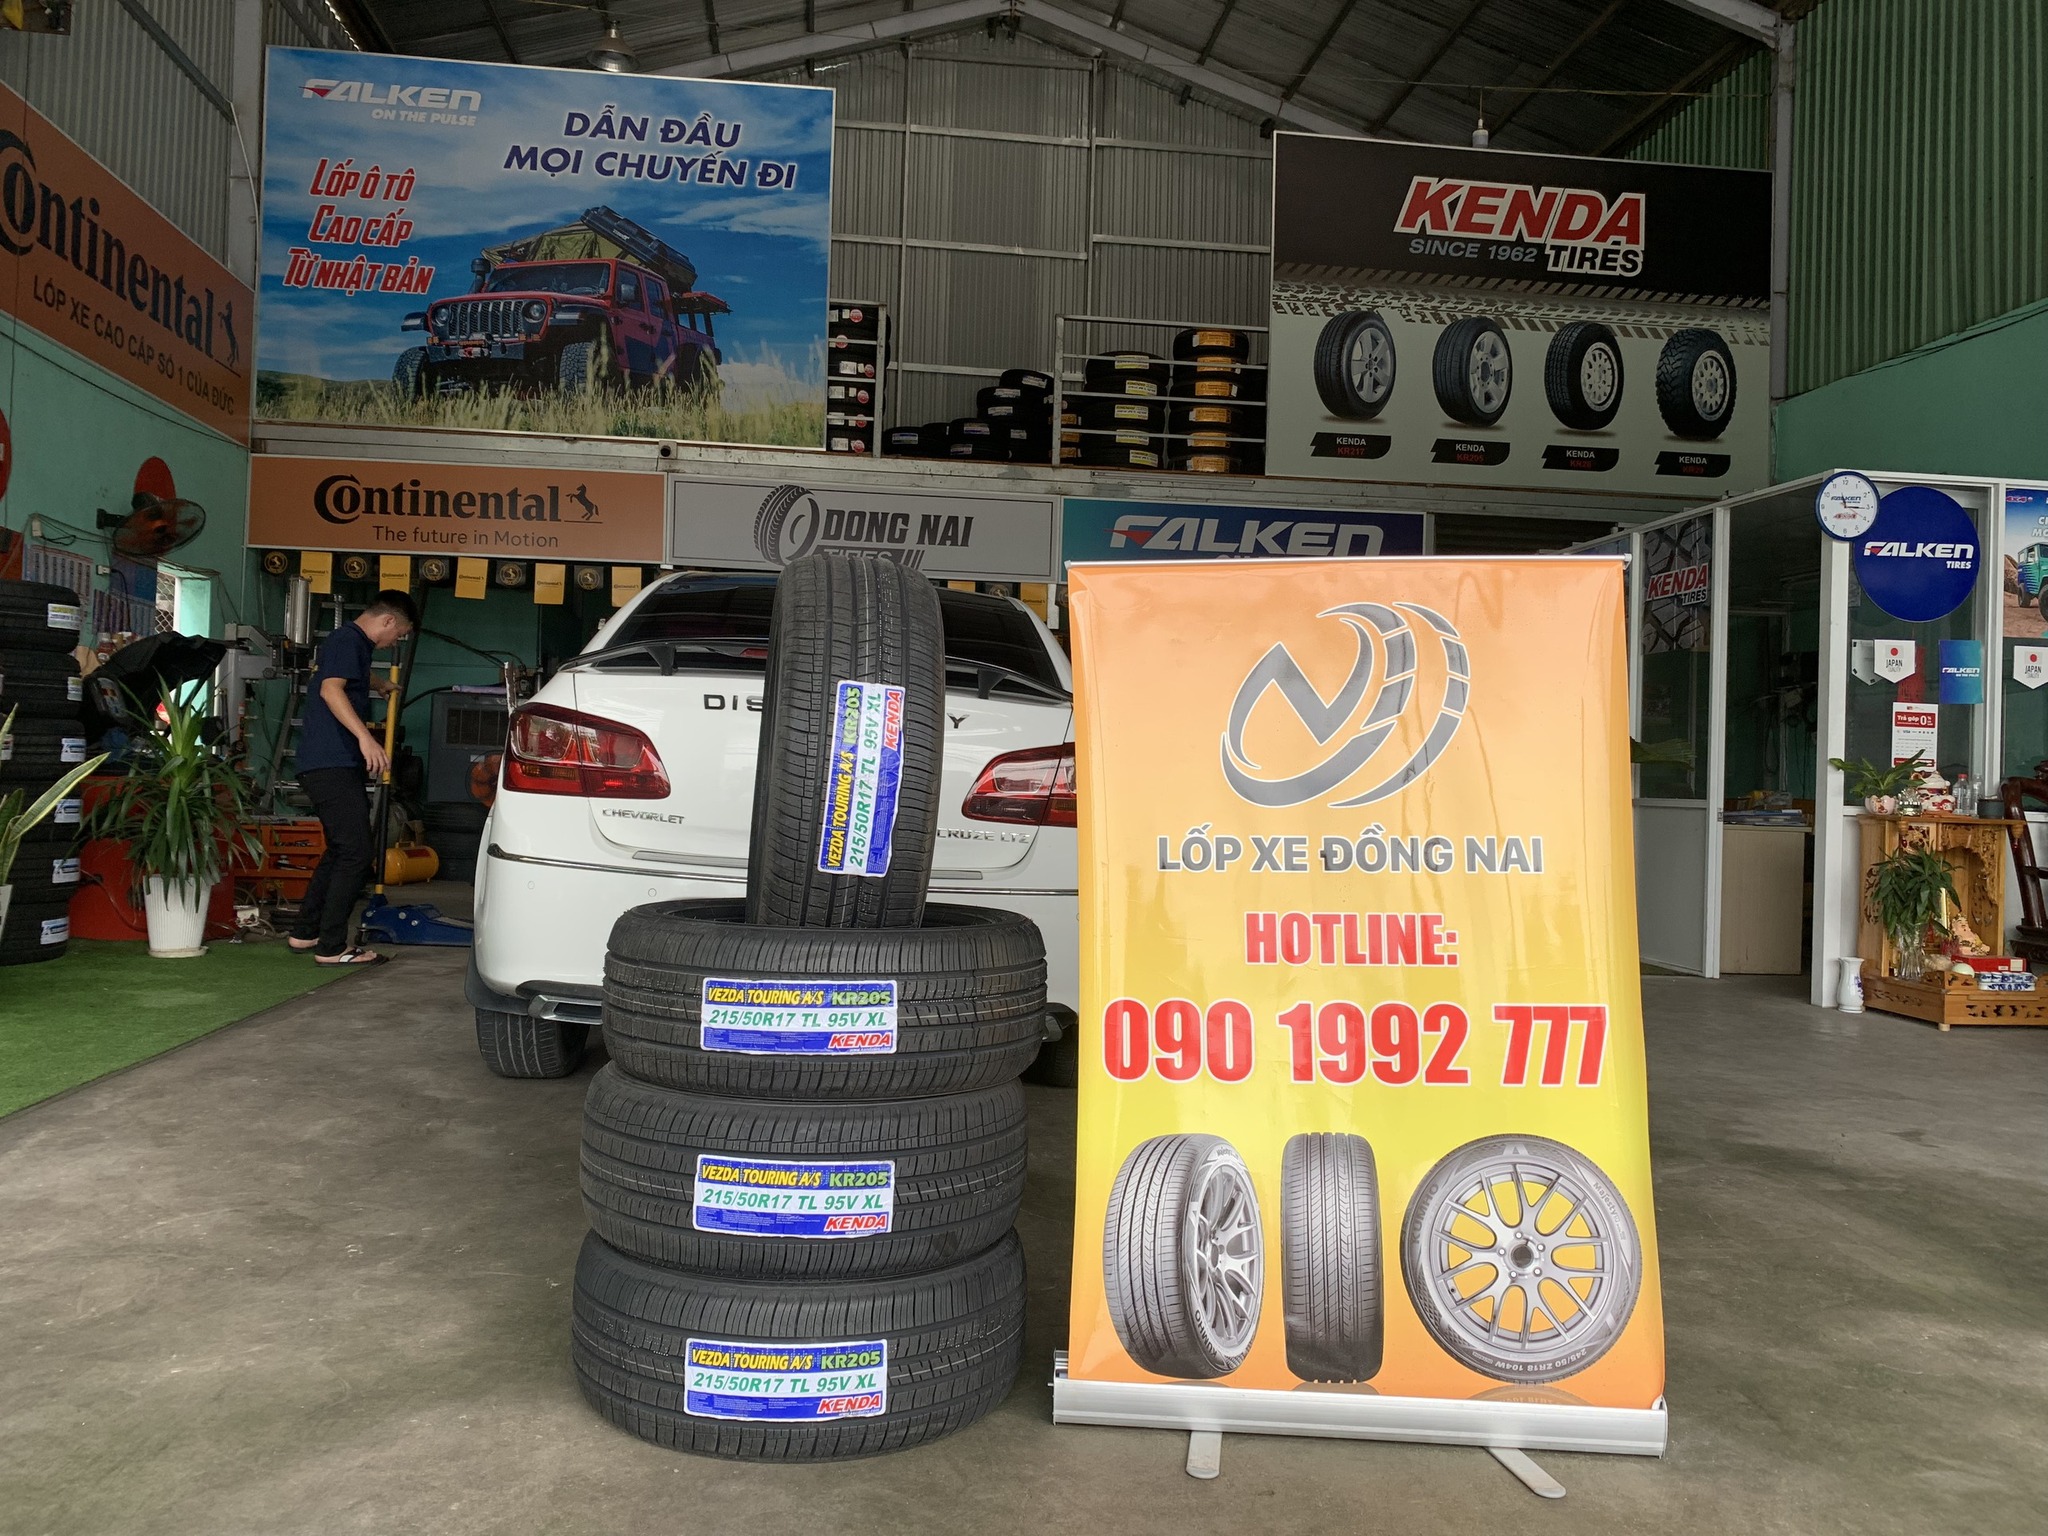 TƯ VẤN : Thay lốp xe Chevrolet Cruze ở Nhơn Trạch, Đồng Nai.